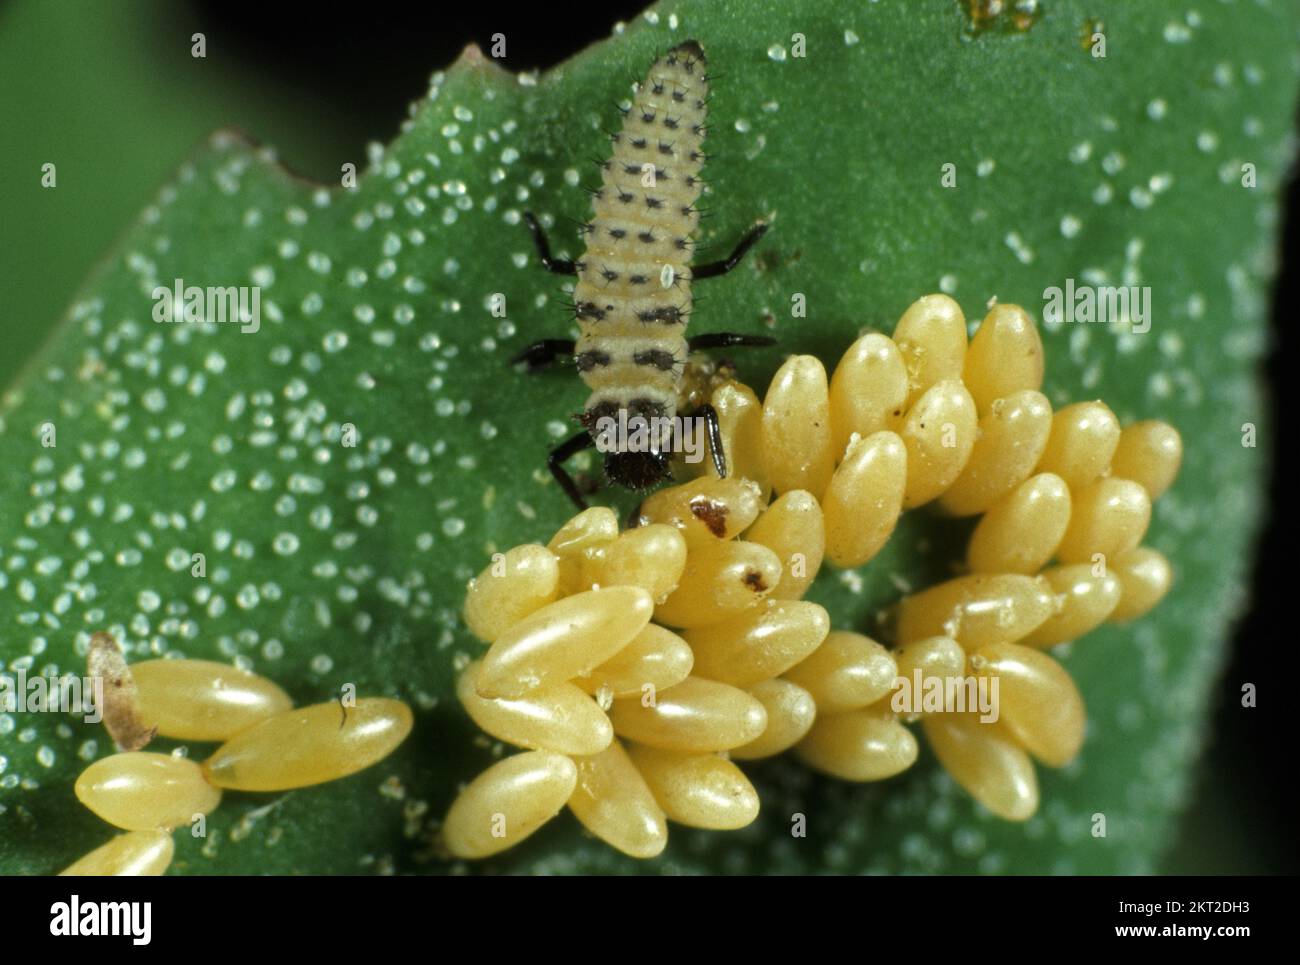 Larva depredadora de siete manchas (Coccinella septumpunctata) con huevos de mariquita de un lote separado Foto de stock